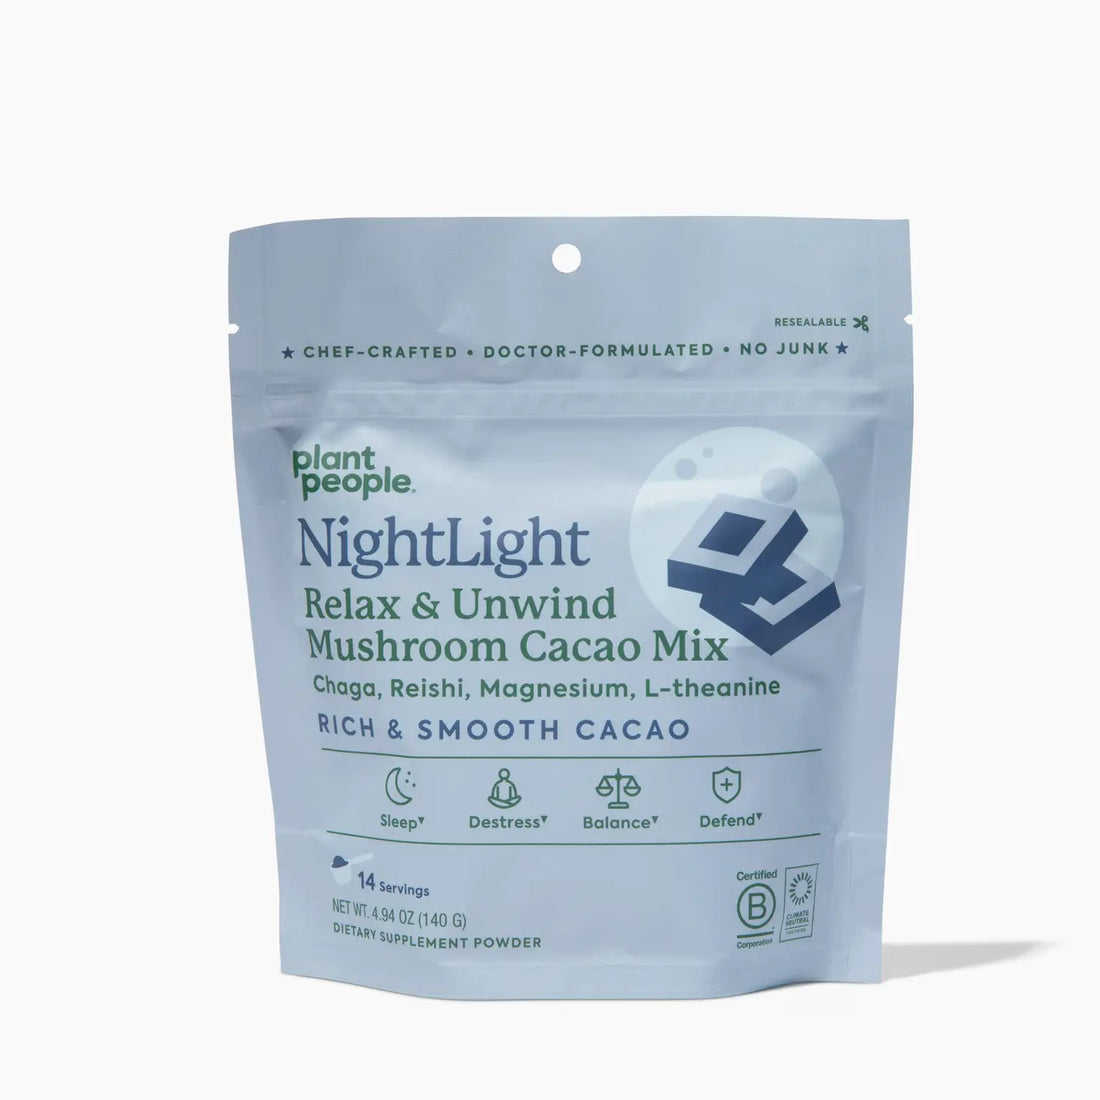 Nightlight - Calming & Chill Mushroom Cacao Mix